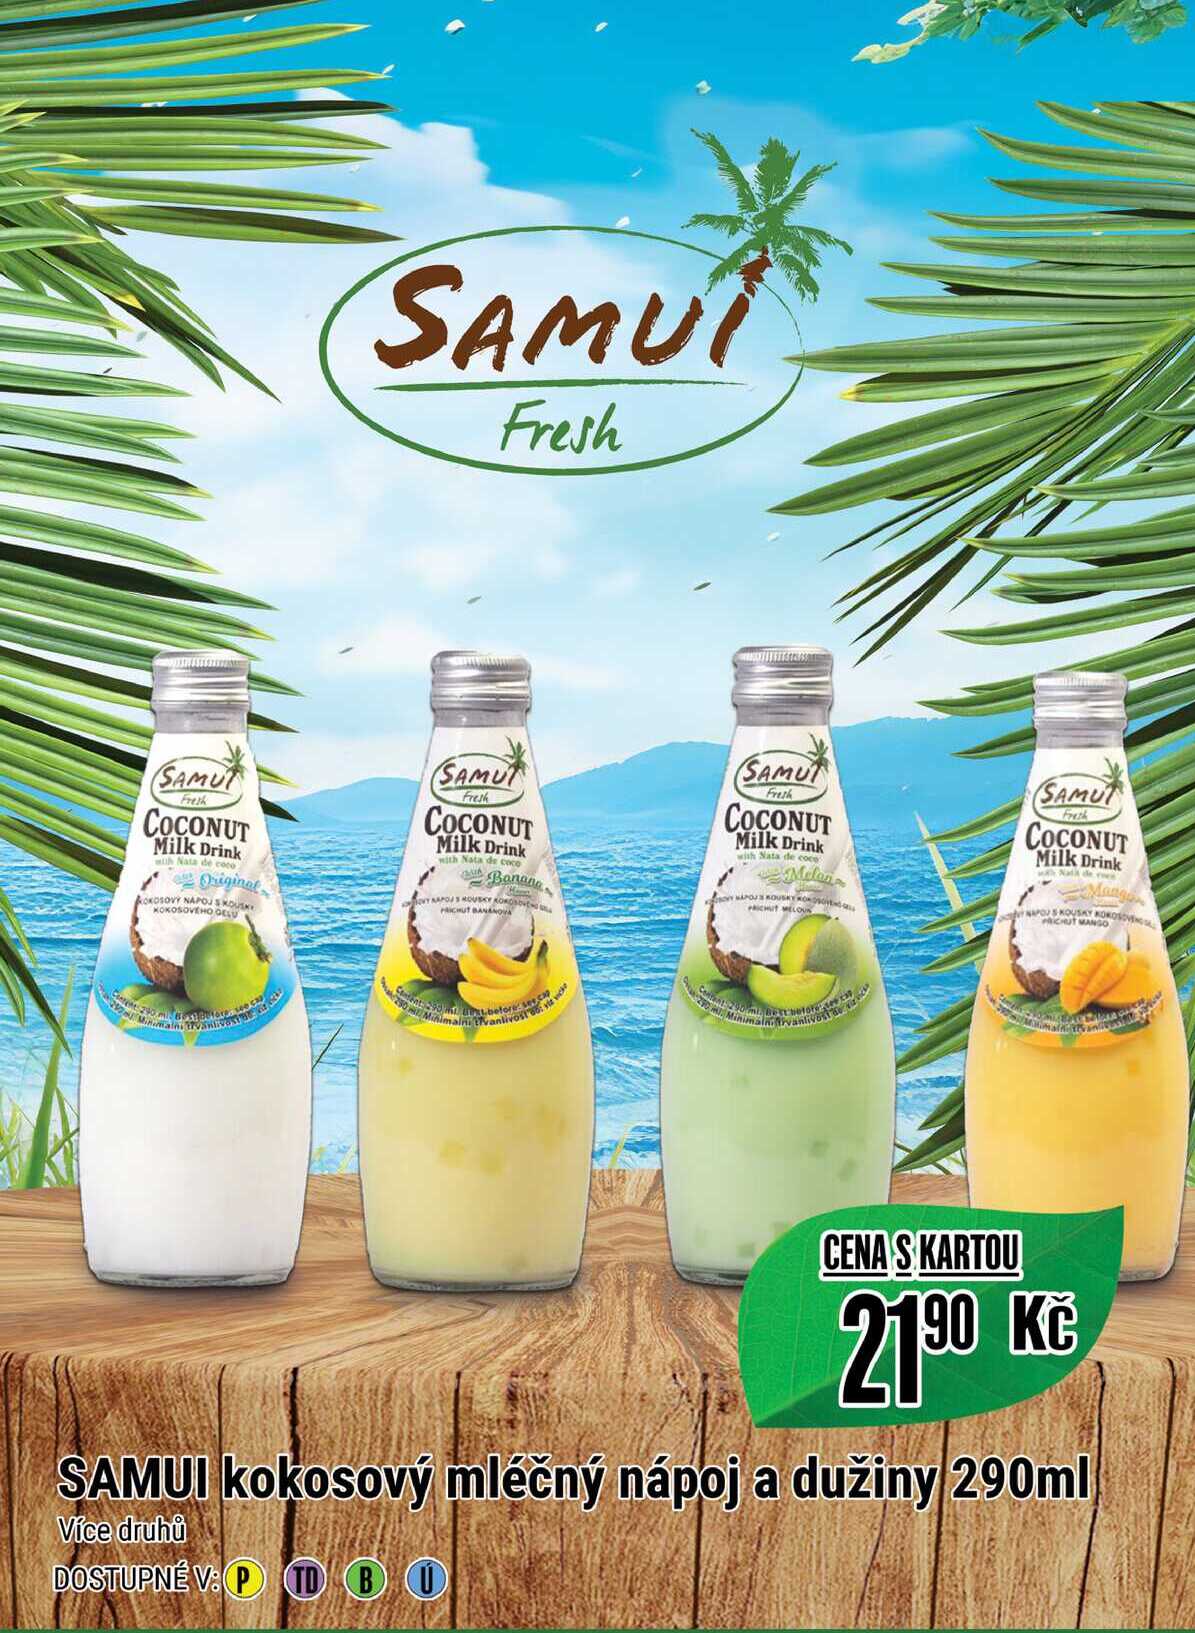 SAMUI kokosový mléčný nápoj a dužiny 290ml  